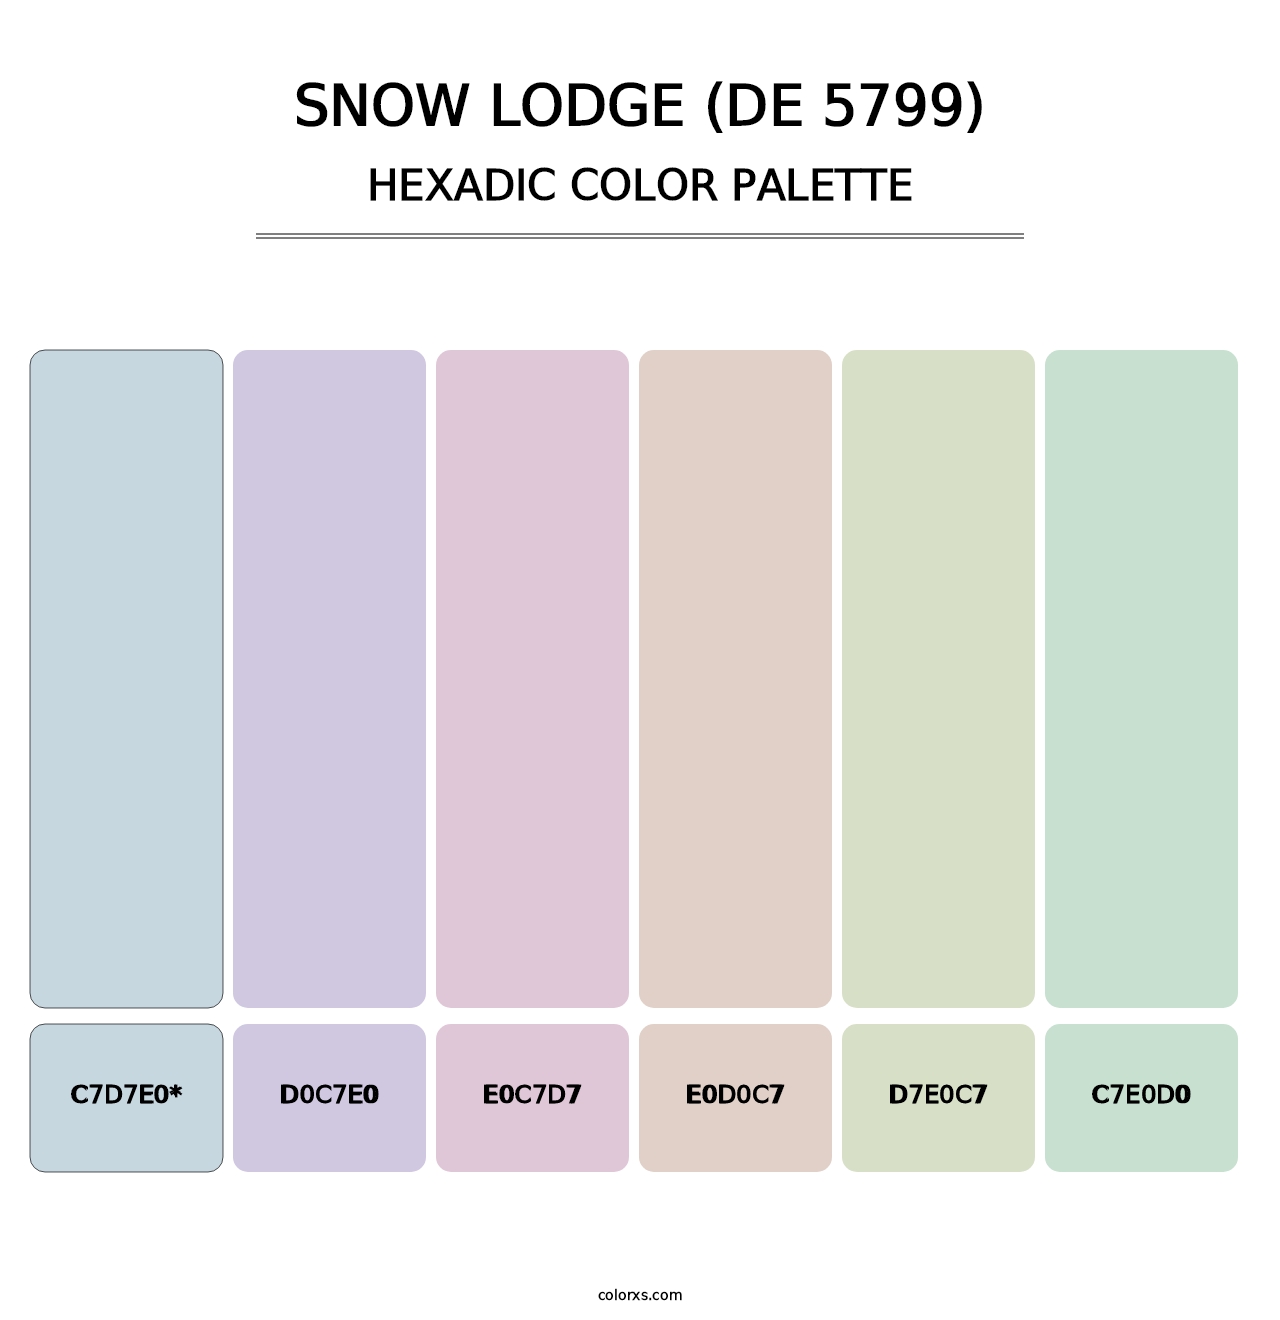 Snow Lodge (DE 5799) - Hexadic Color Palette